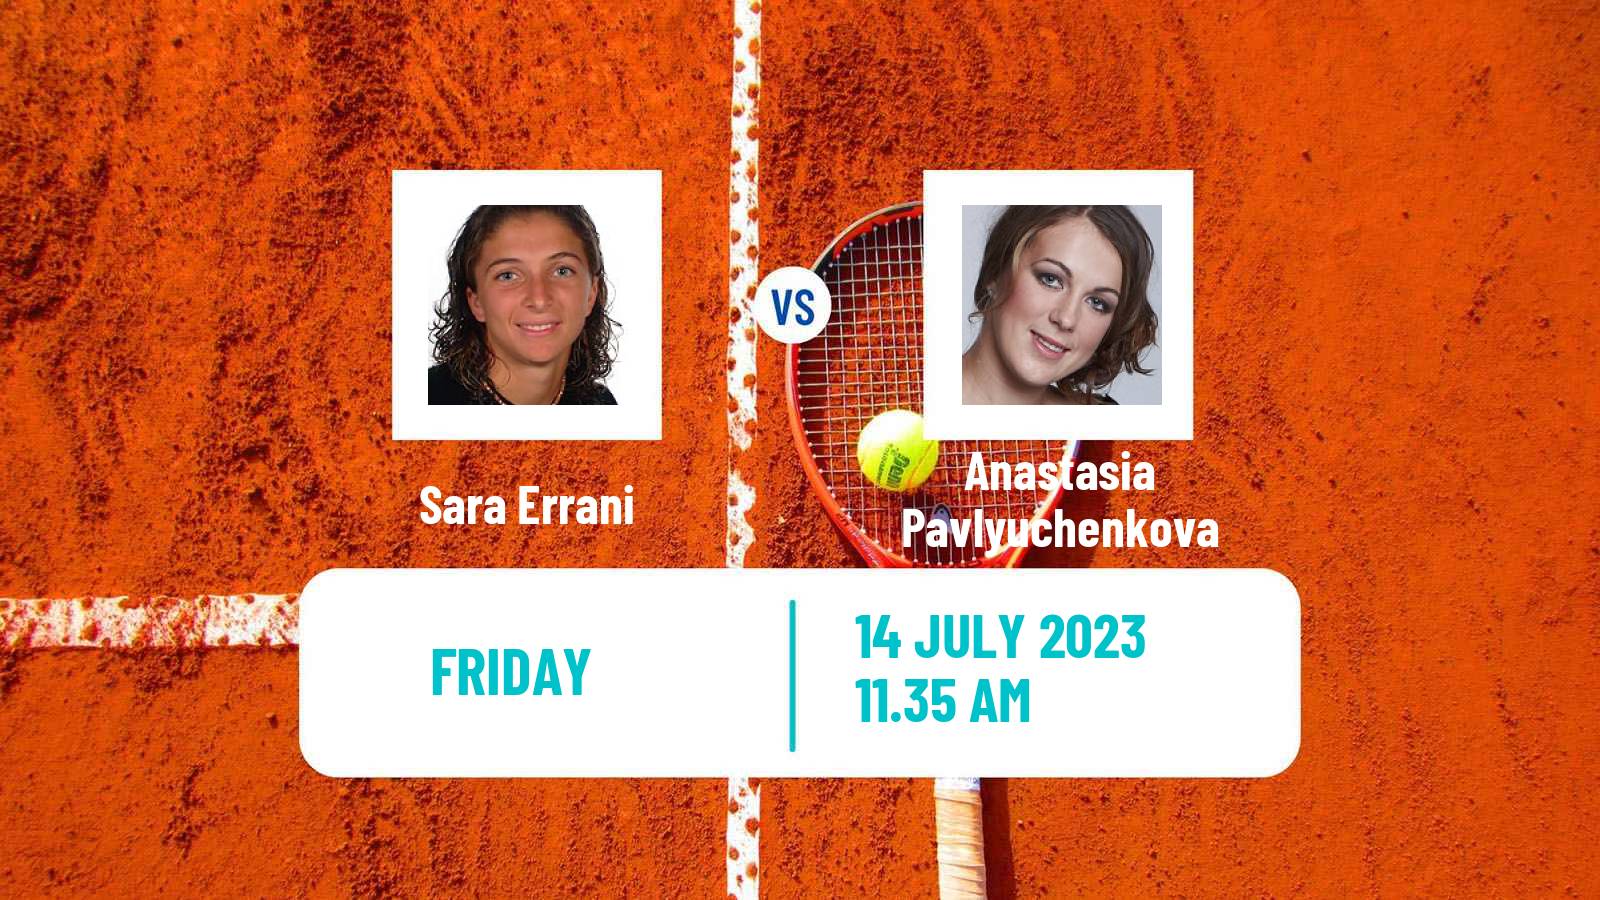 Tennis Contrexeville Challenger Women Sara Errani - Anastasia Pavlyuchenkova